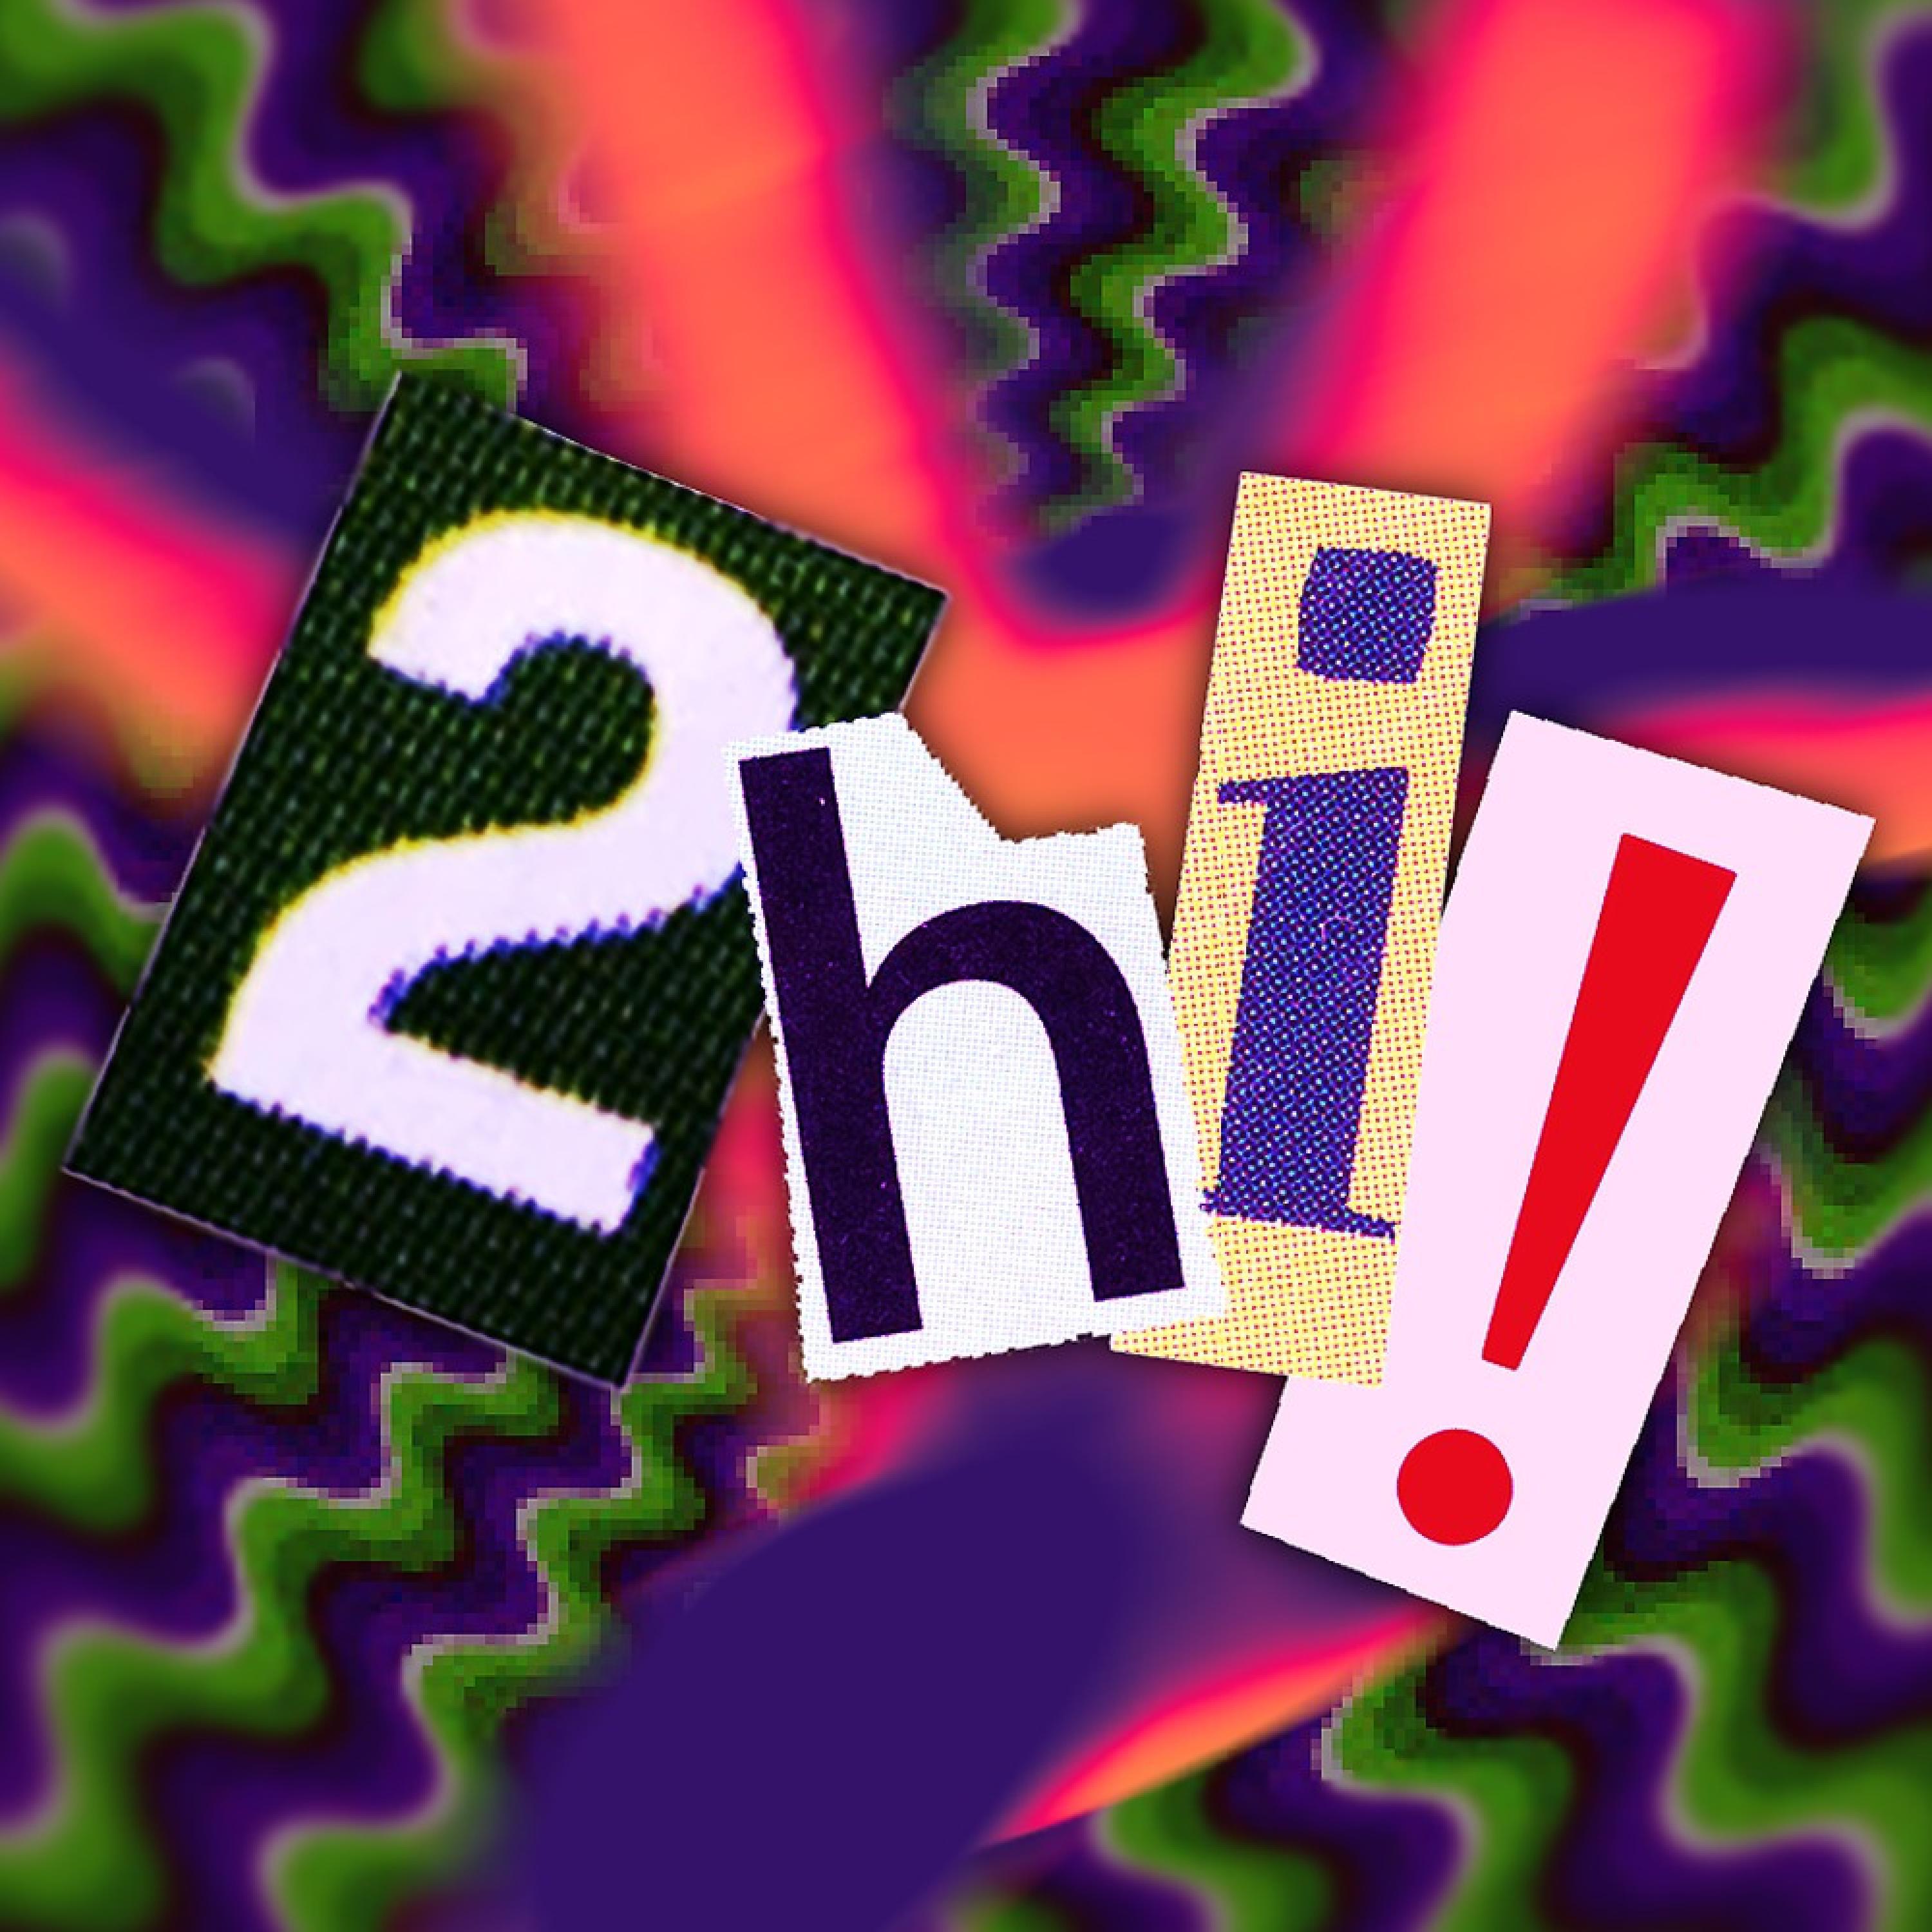 Zin - 2hi! (feat. Perp13)